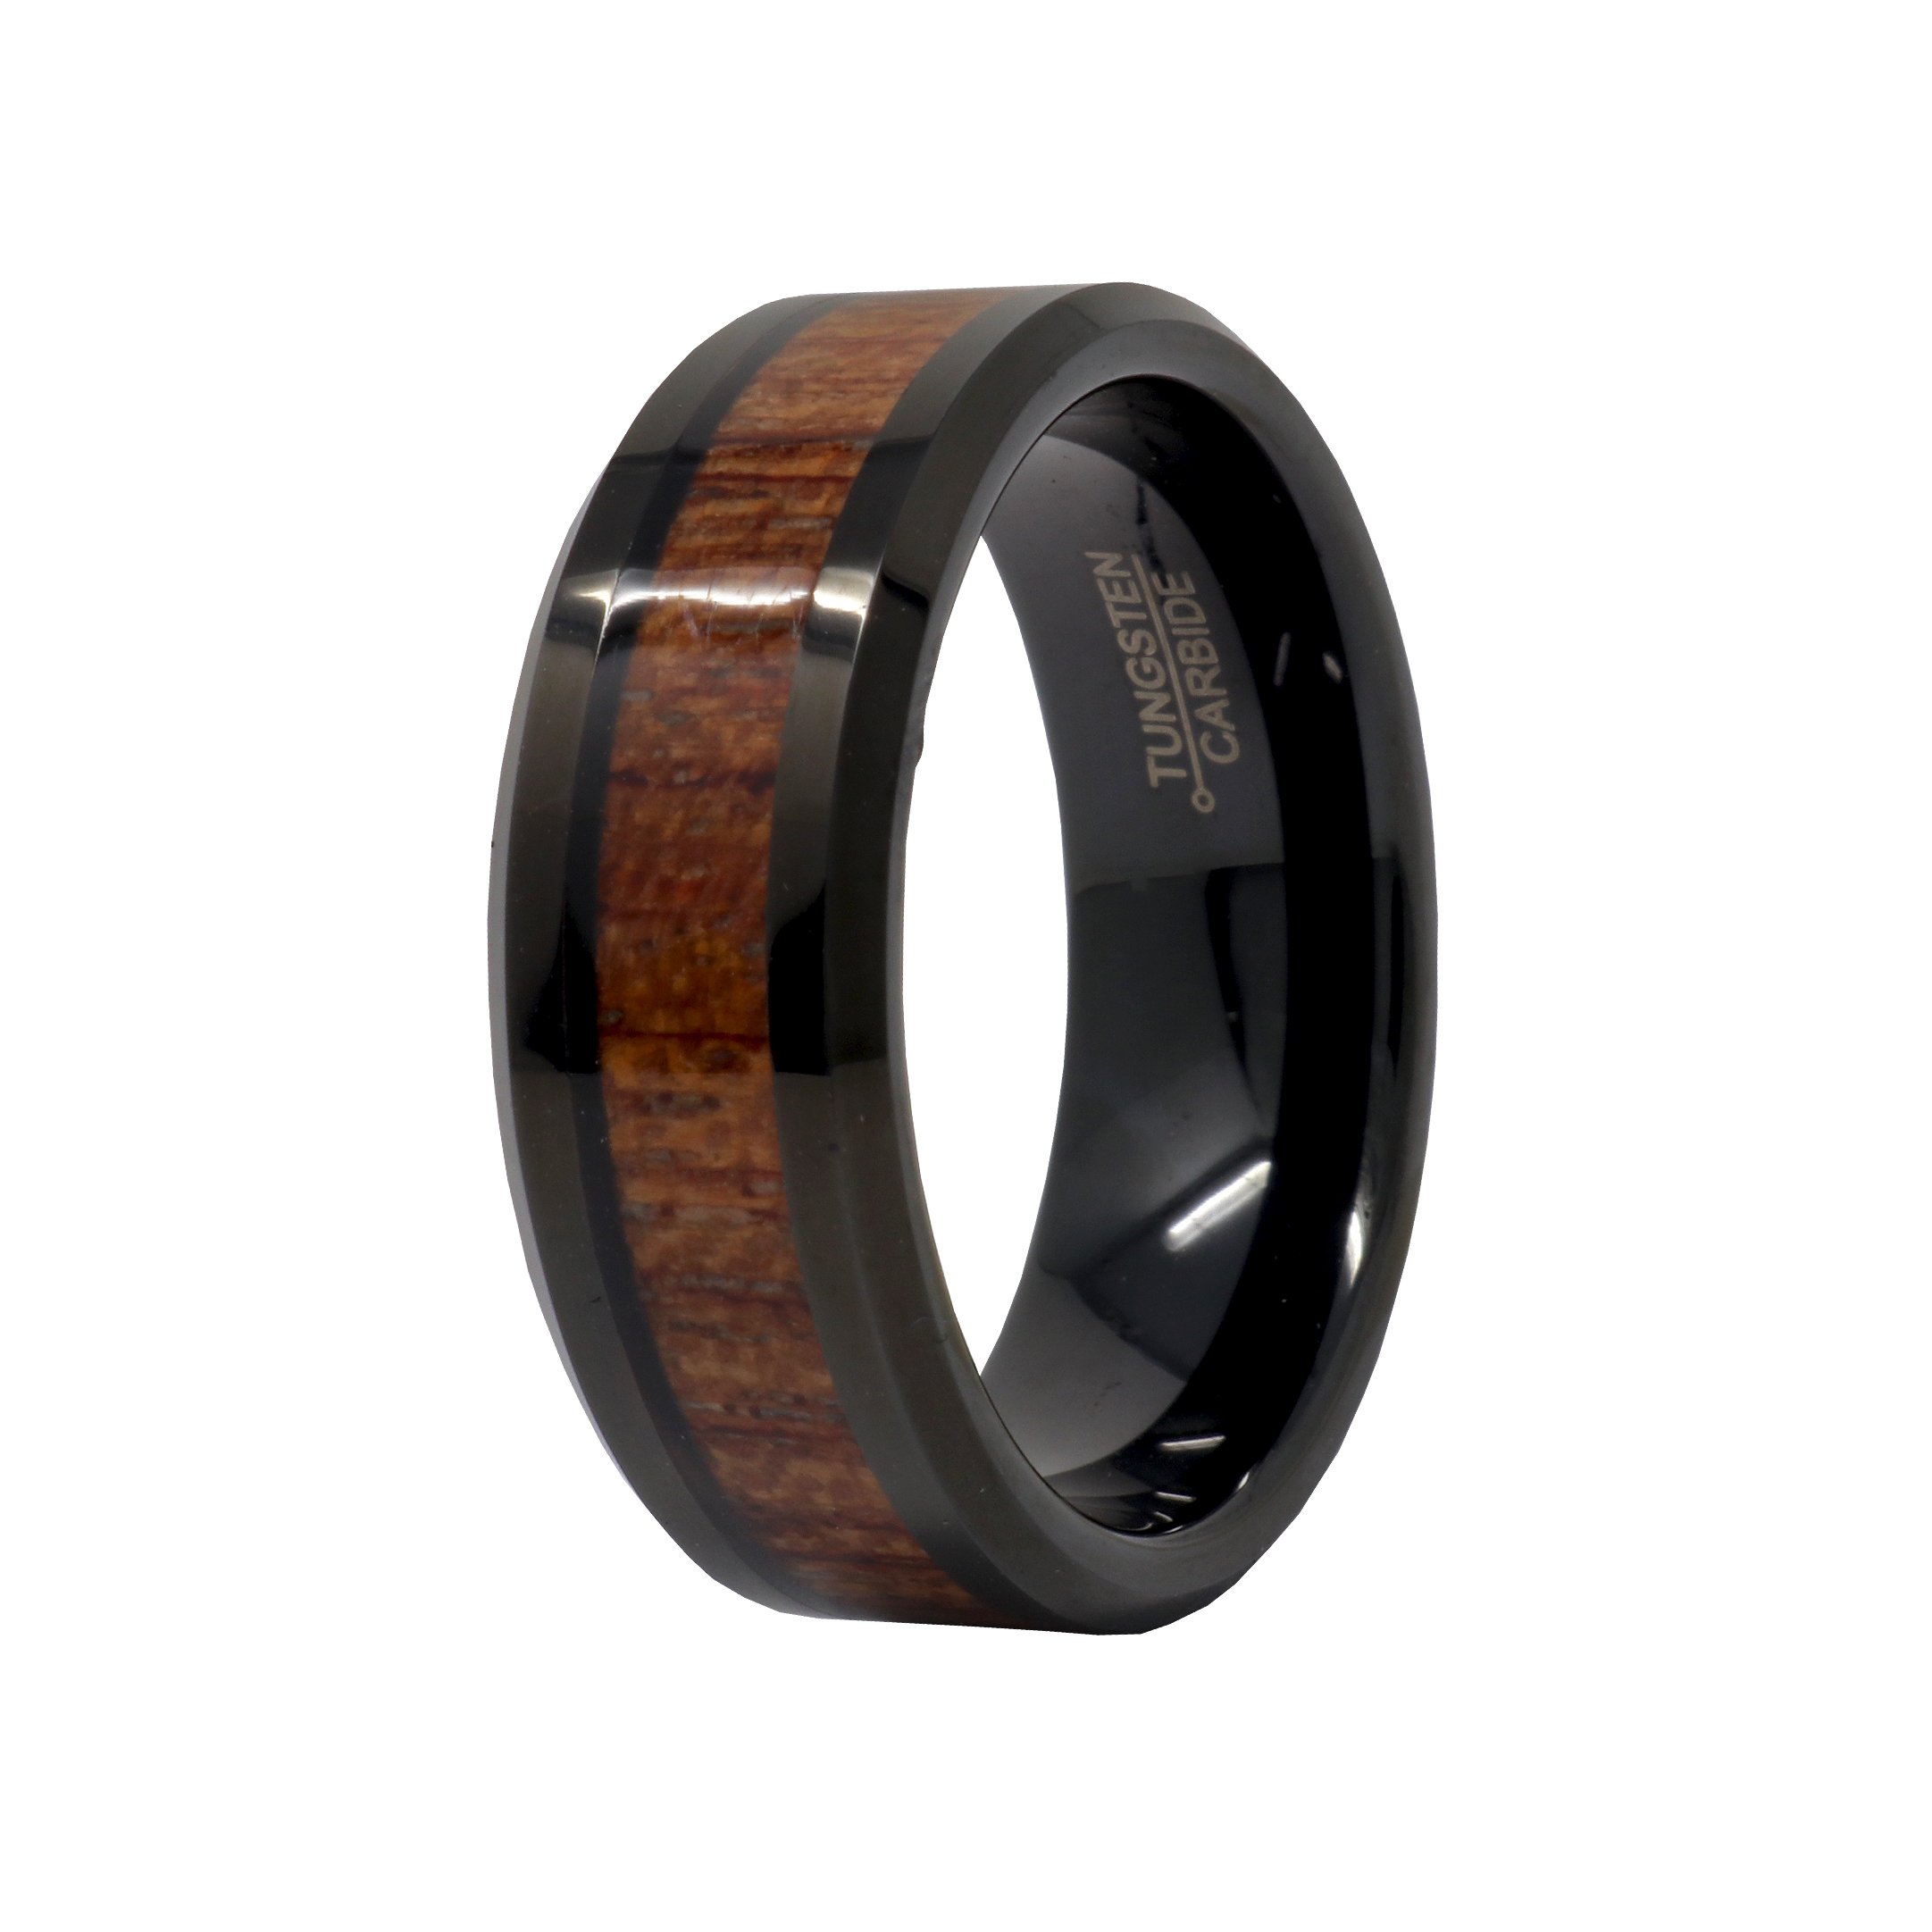 Tungsten Ring Size 13 - 8mm Black Ip Plated With Hawaiian Koa Wood Inlay